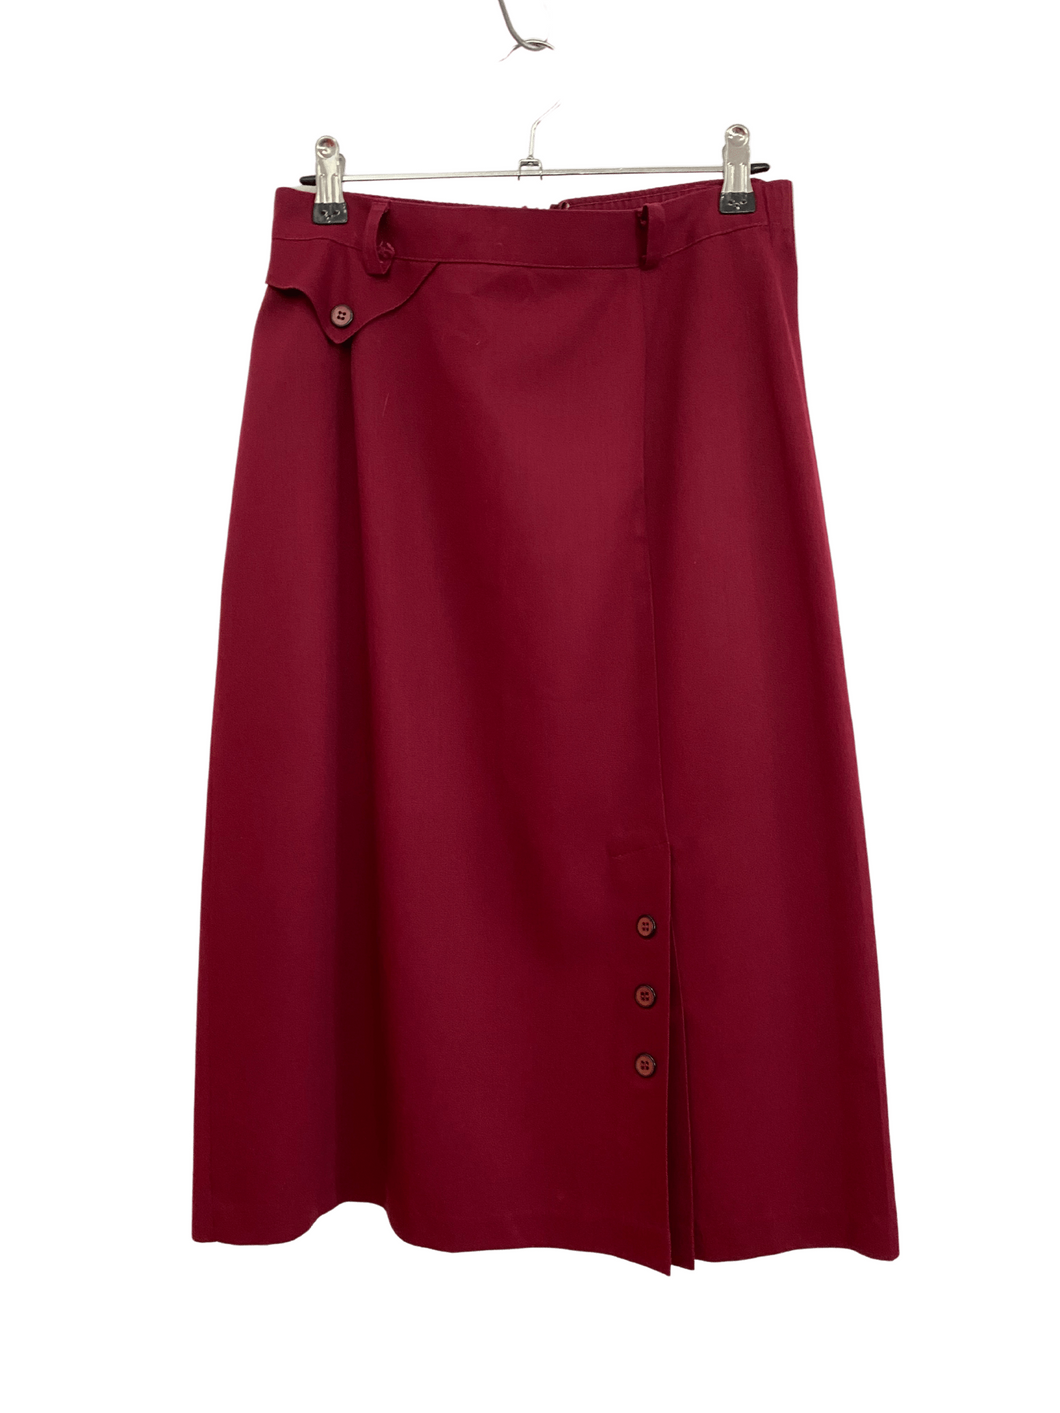 90’s Burgundy Skirt